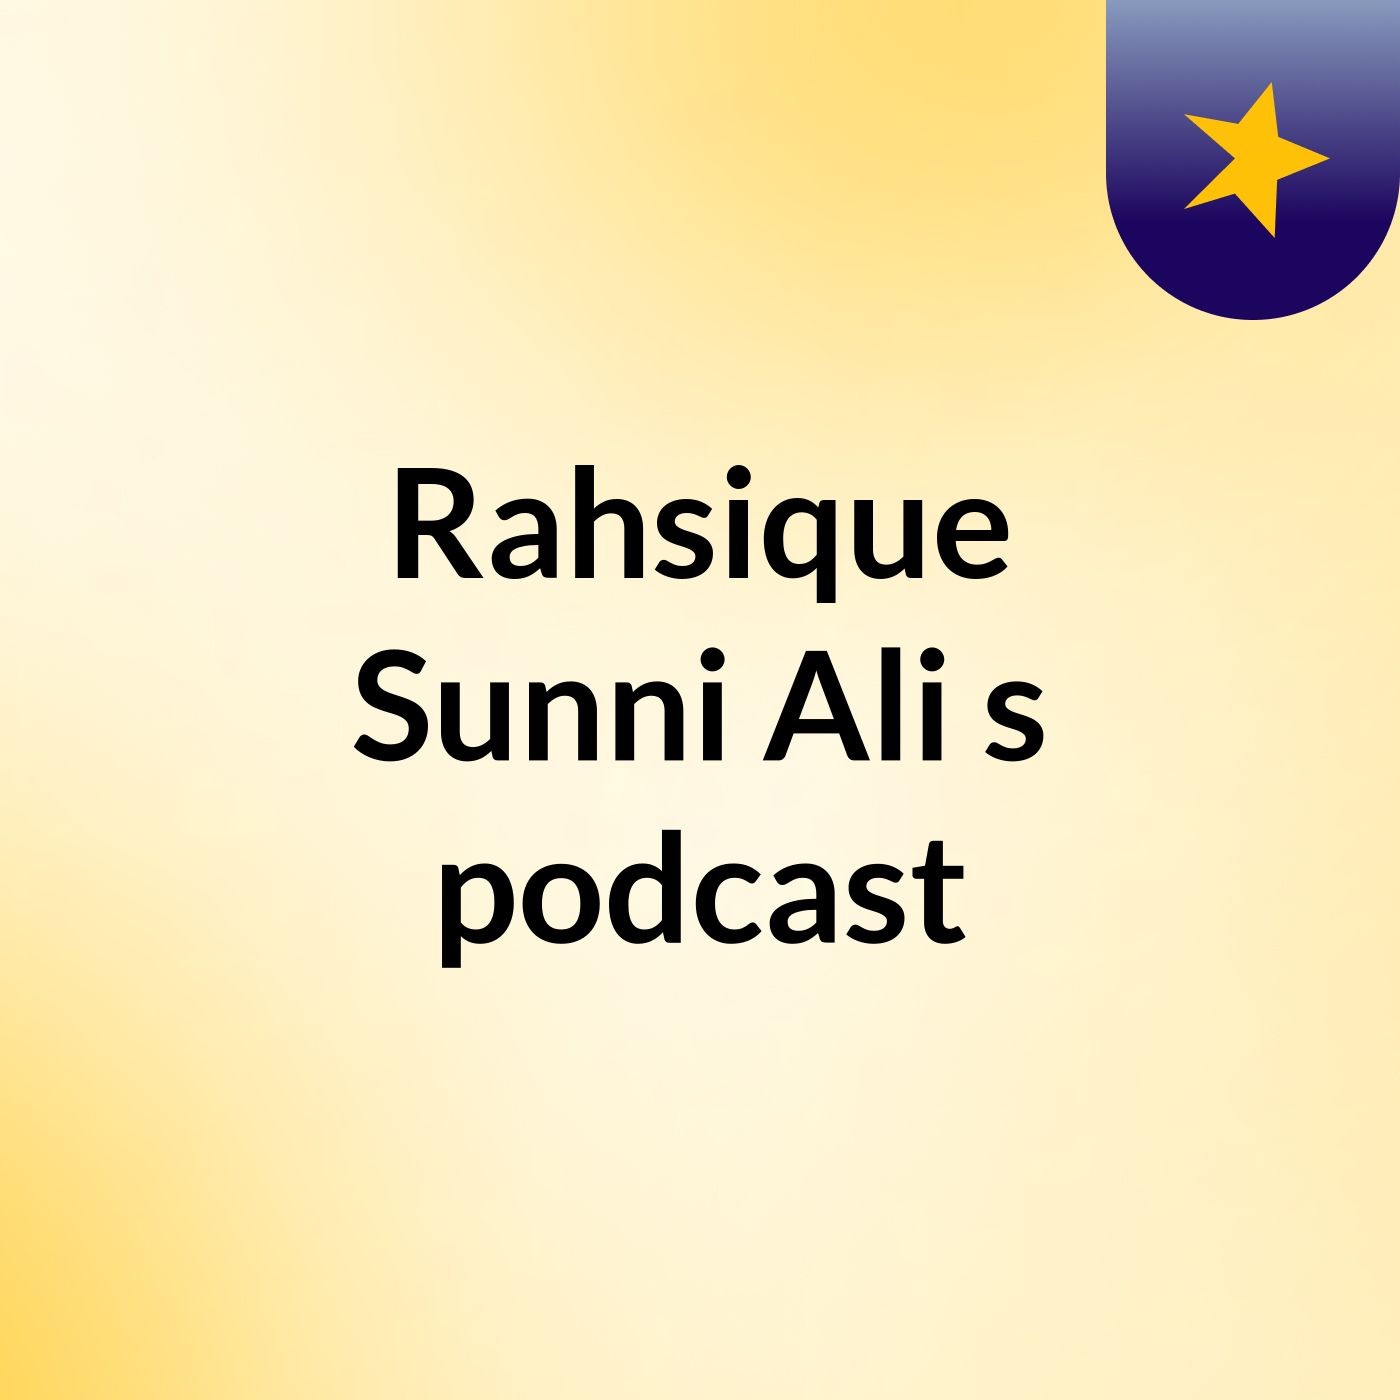 Rahsique Sunni Ali's podcast